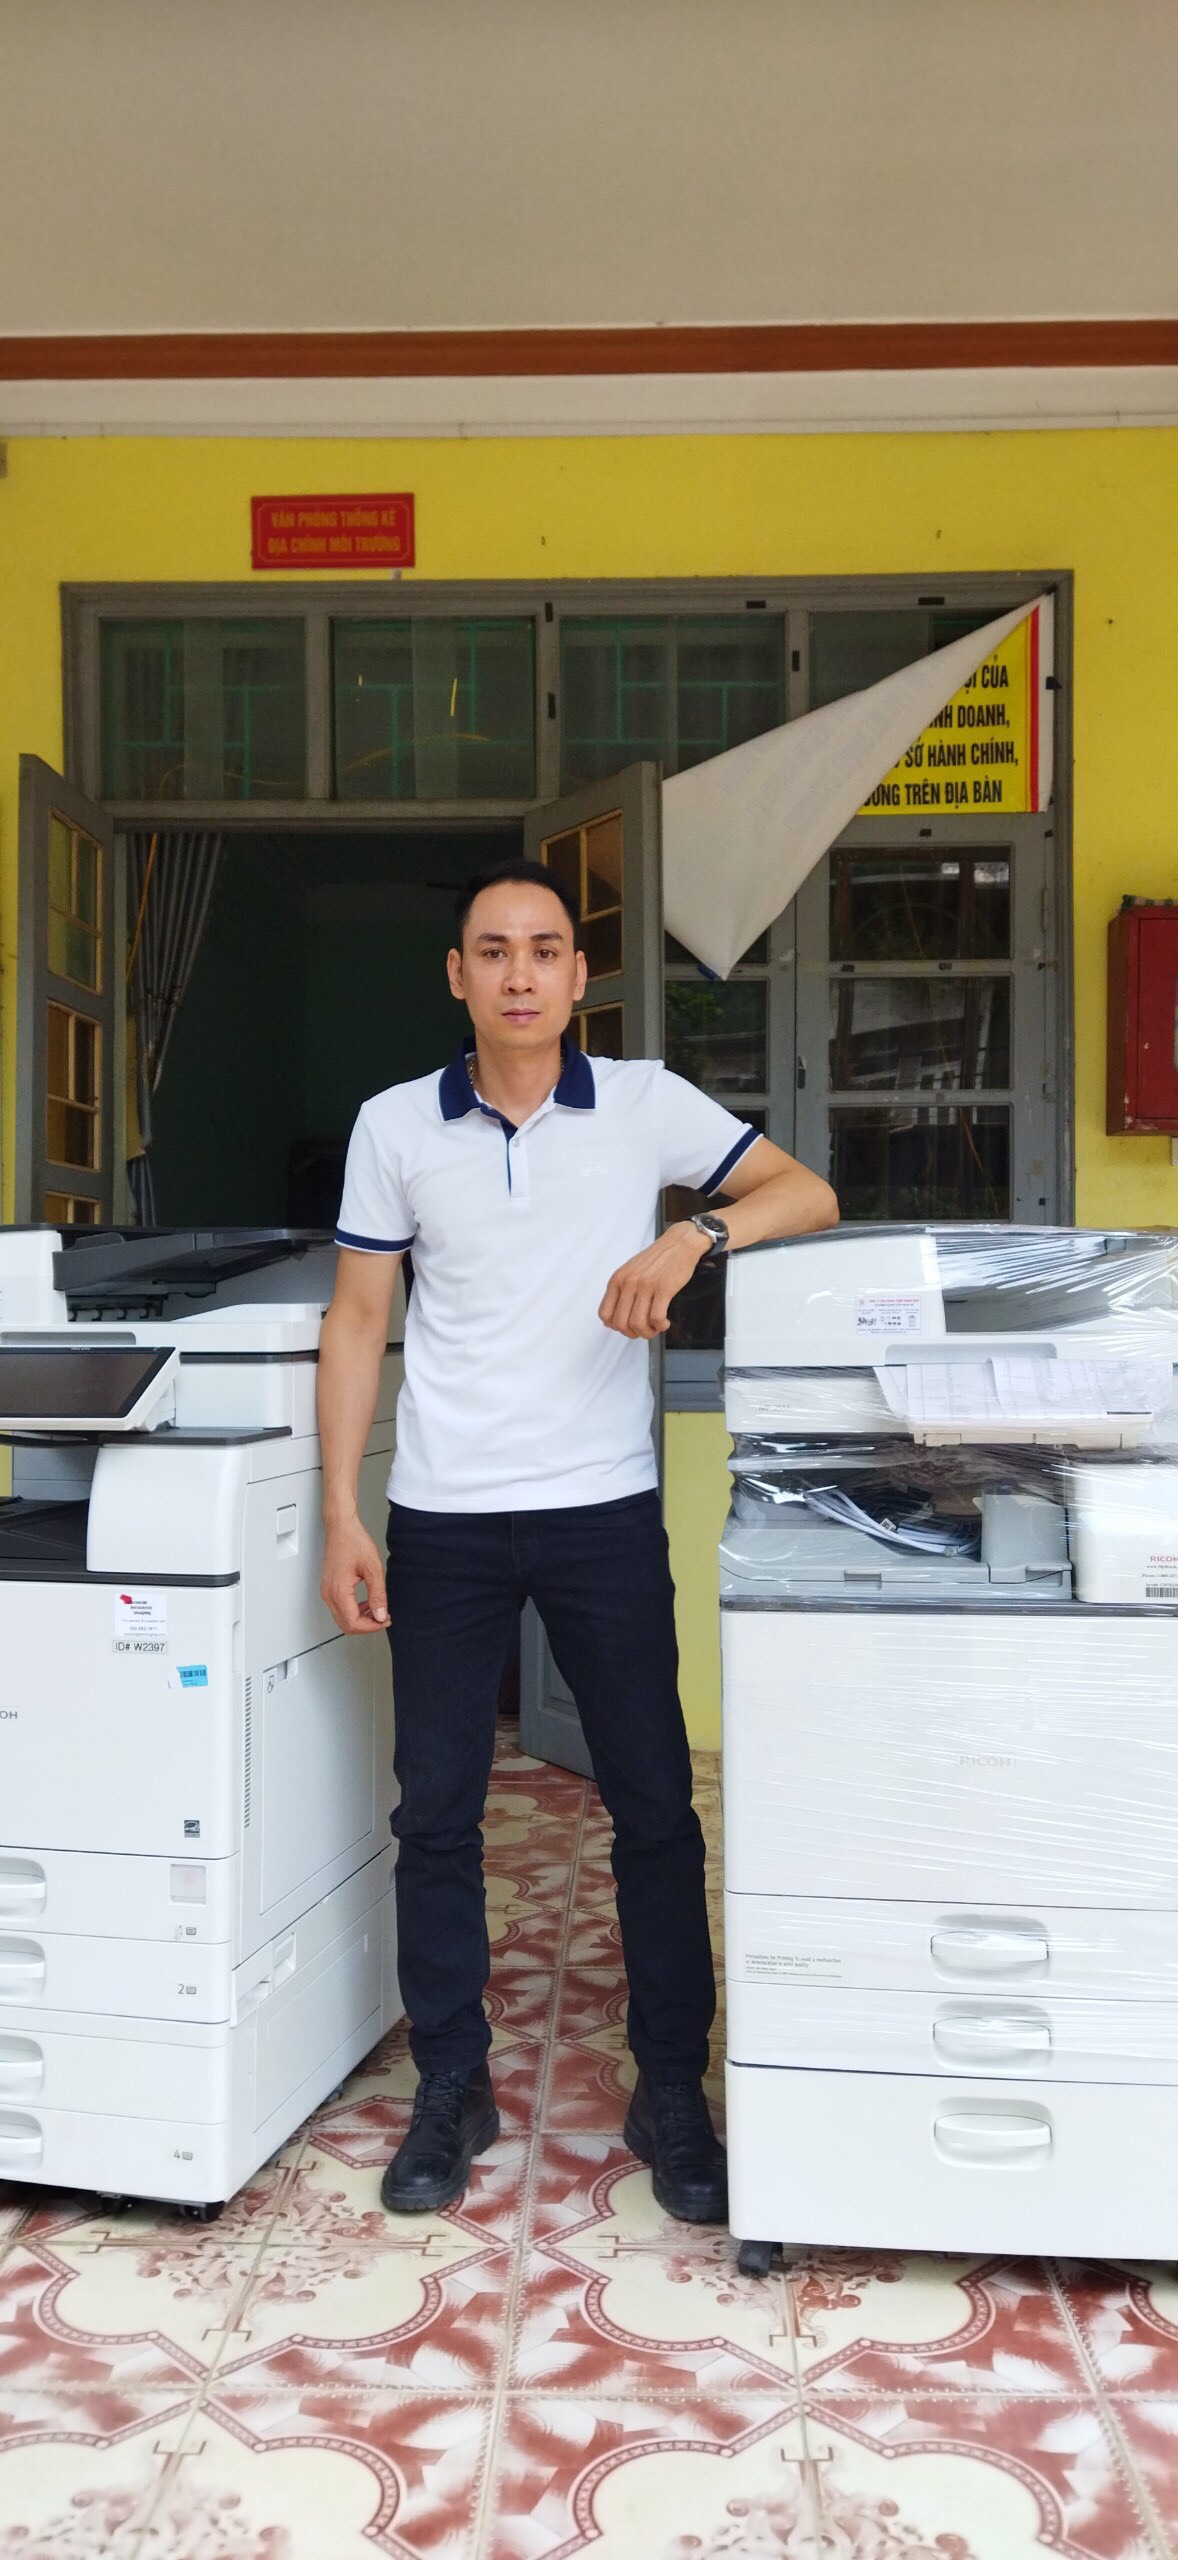 Cho thuê máy photocopy tại Thanh Hóa giá rẻ, giao tận nơi, bảo hành tận nơi